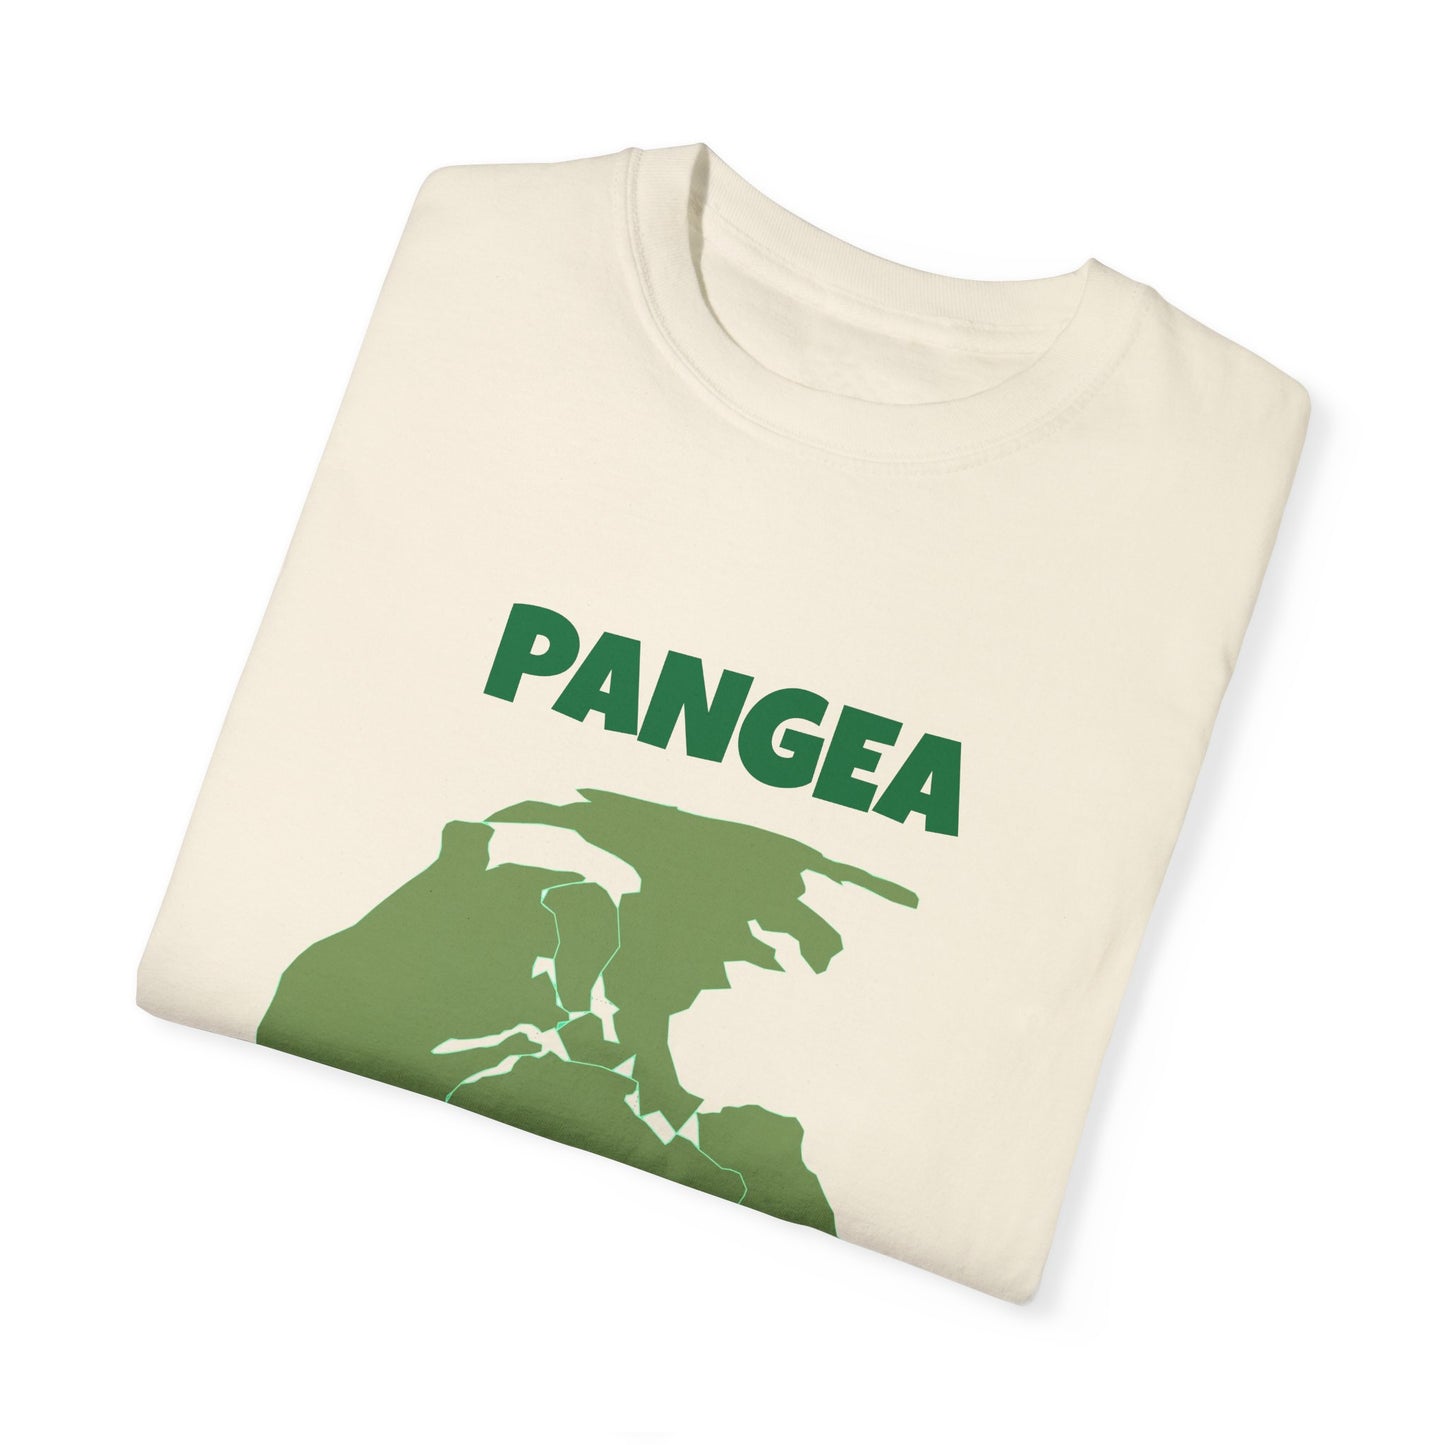 PANGEA Unisex Garment-Dyed T-shirt